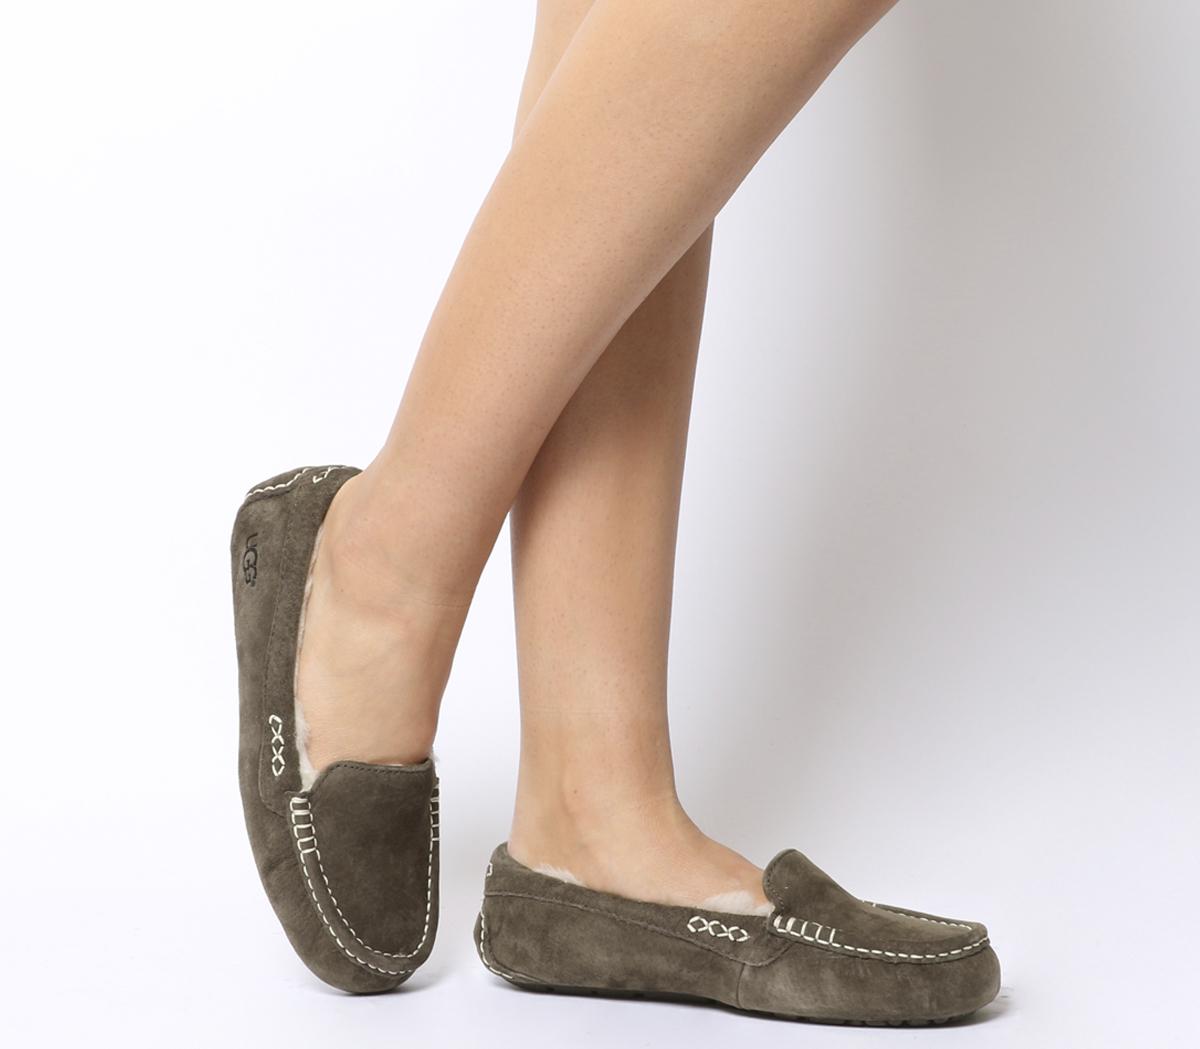 ugg australia women's ansley slippers